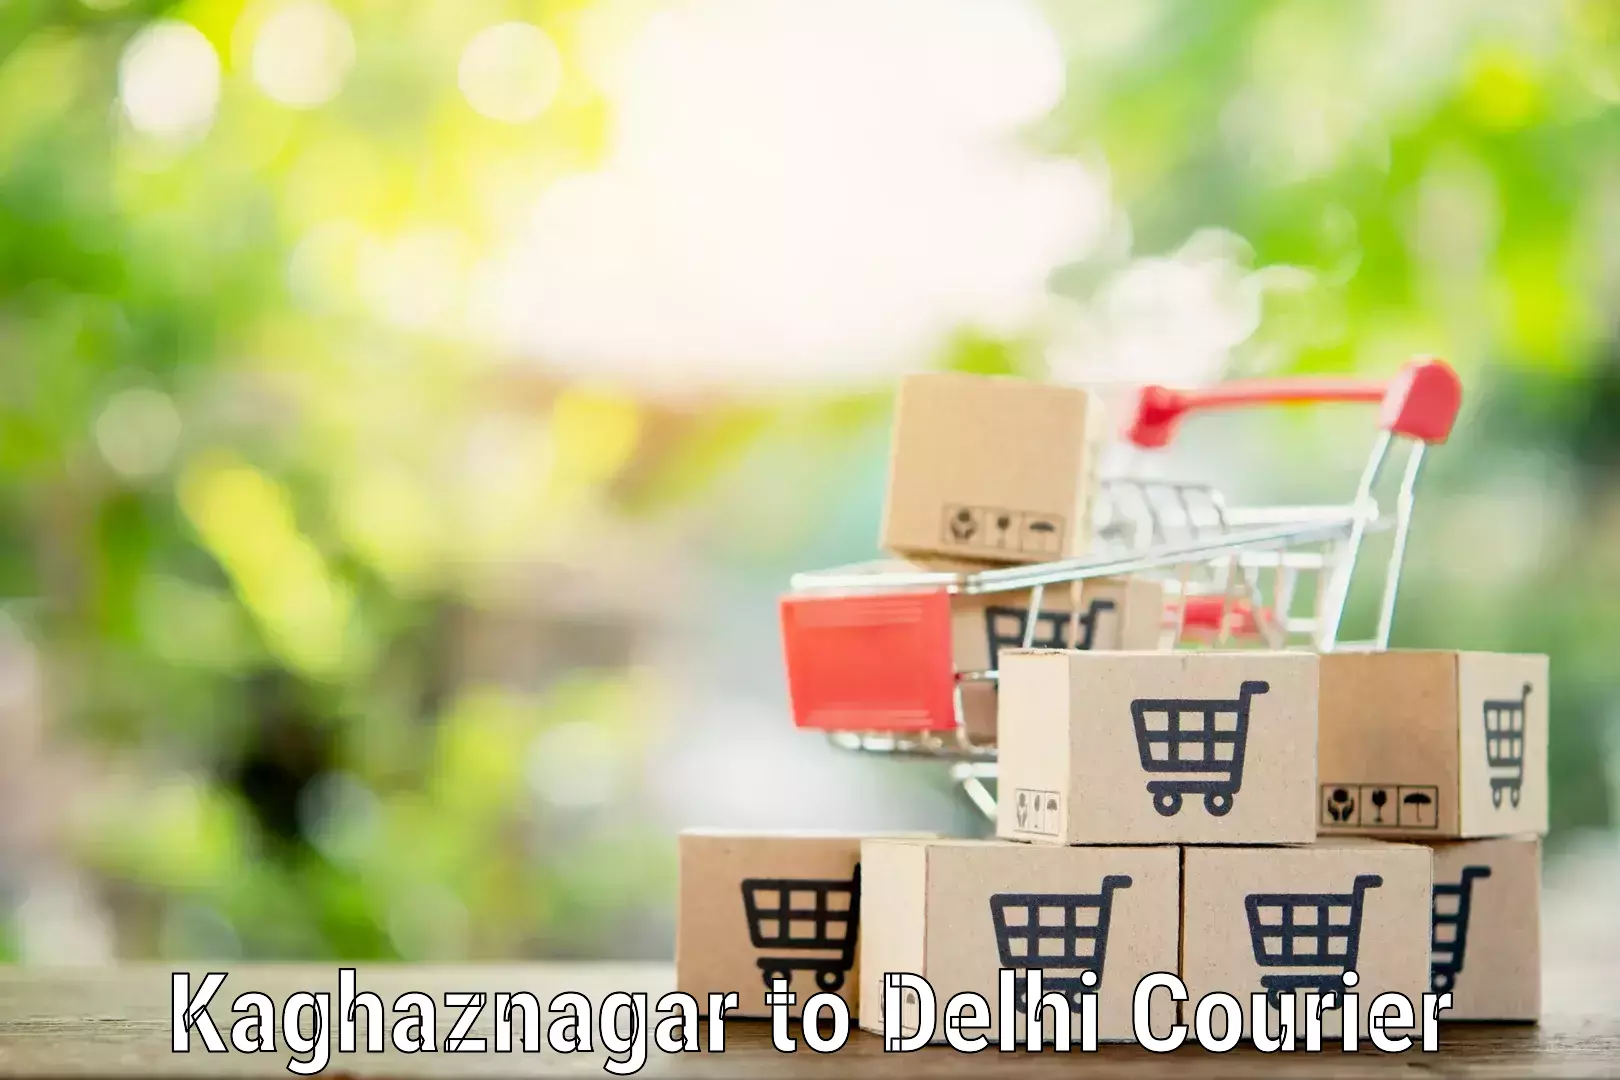 Household goods movers Kaghaznagar to University of Delhi